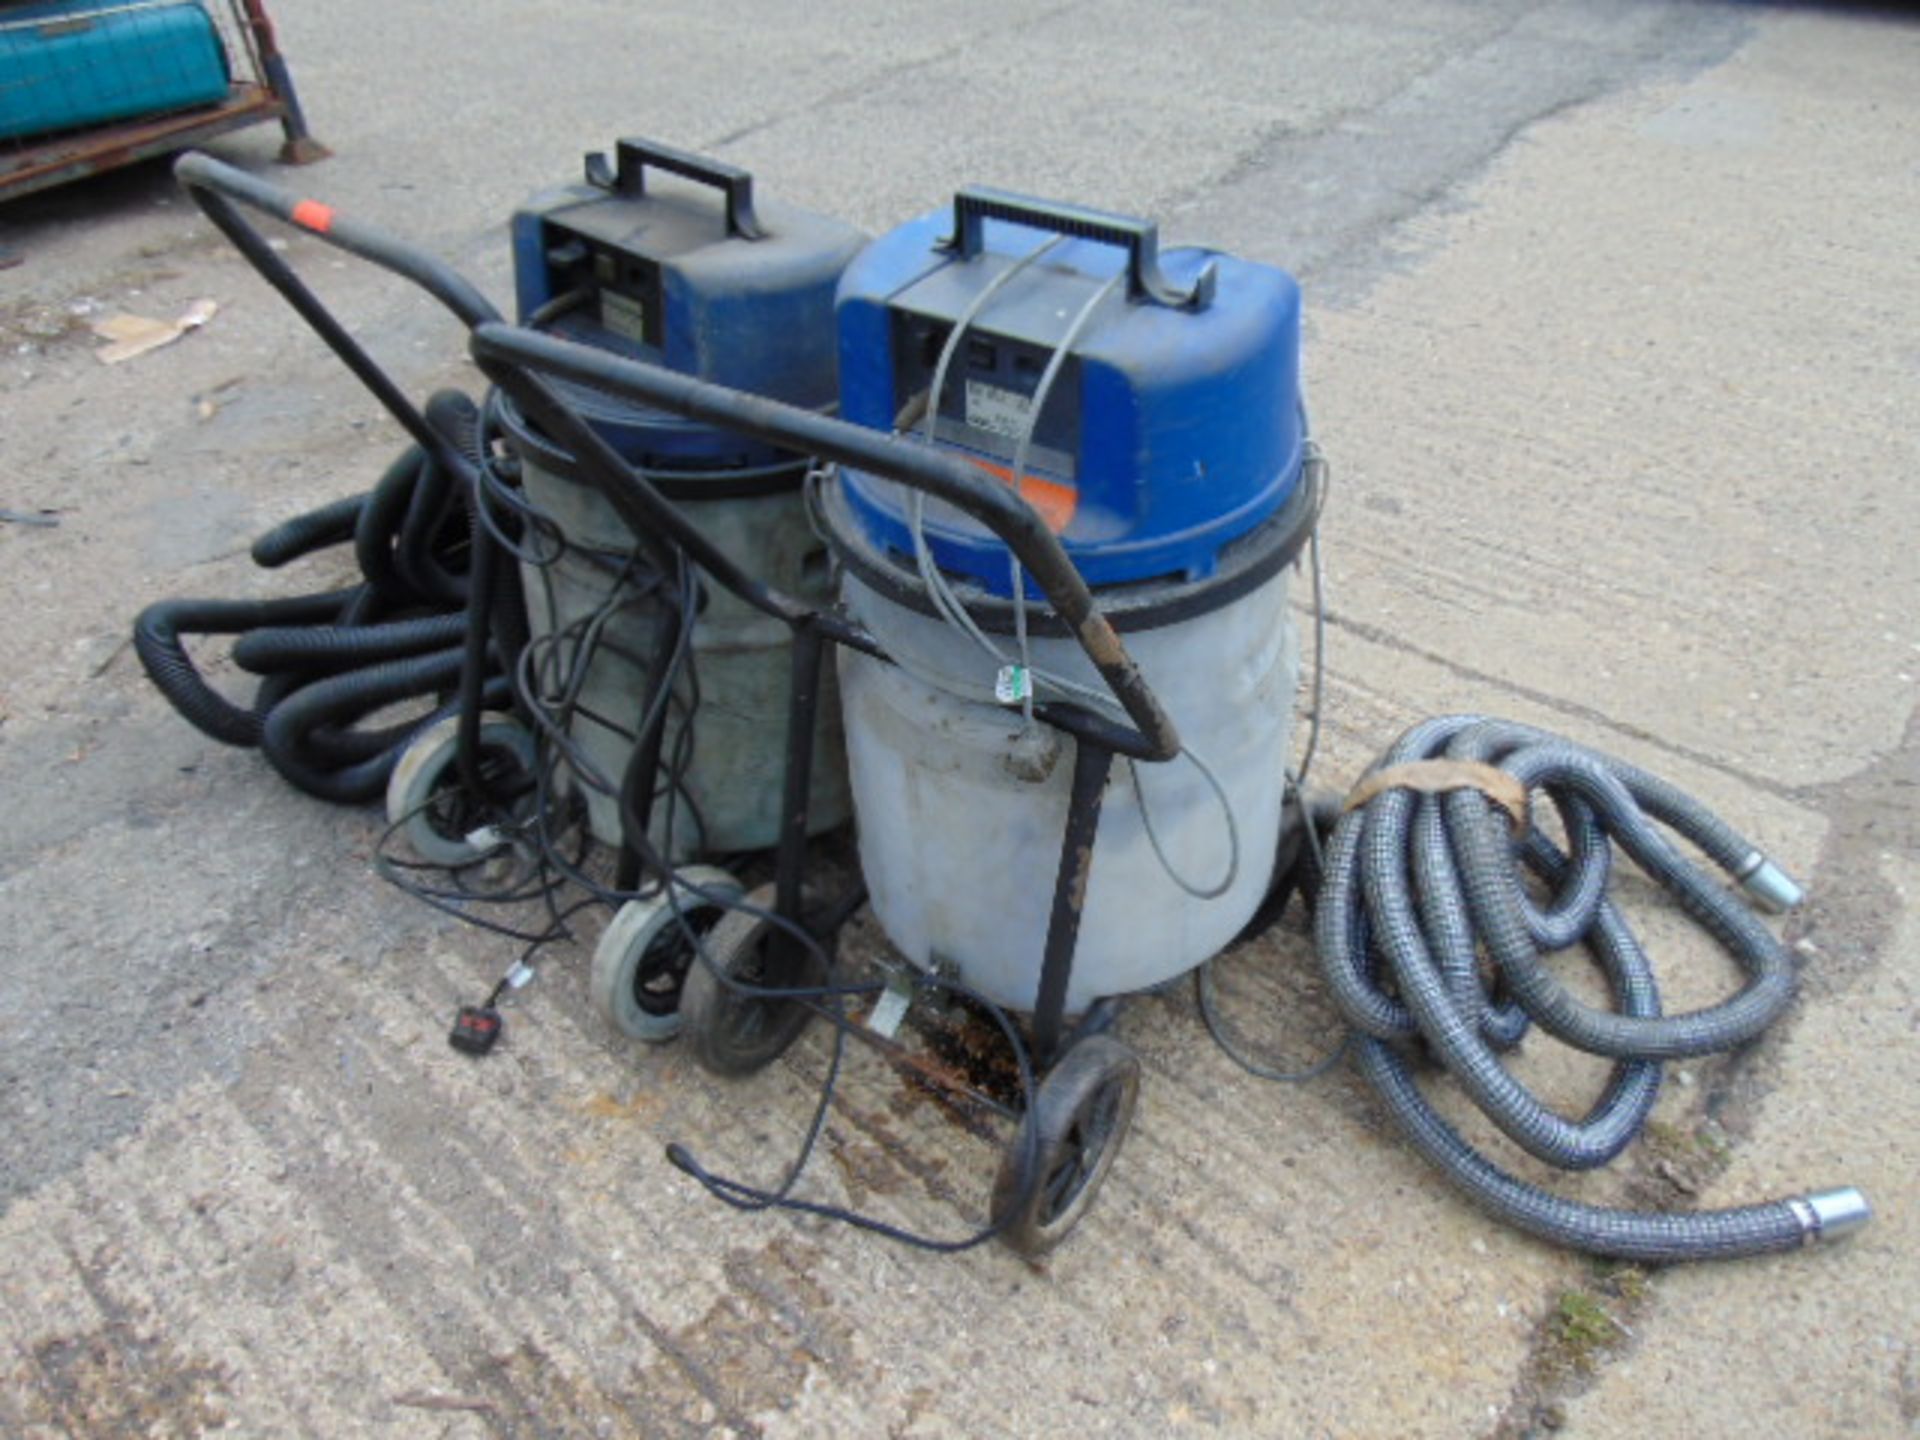 2 x Nilfisk Hipower Industrial Vacuum Cleaners - Image 3 of 5